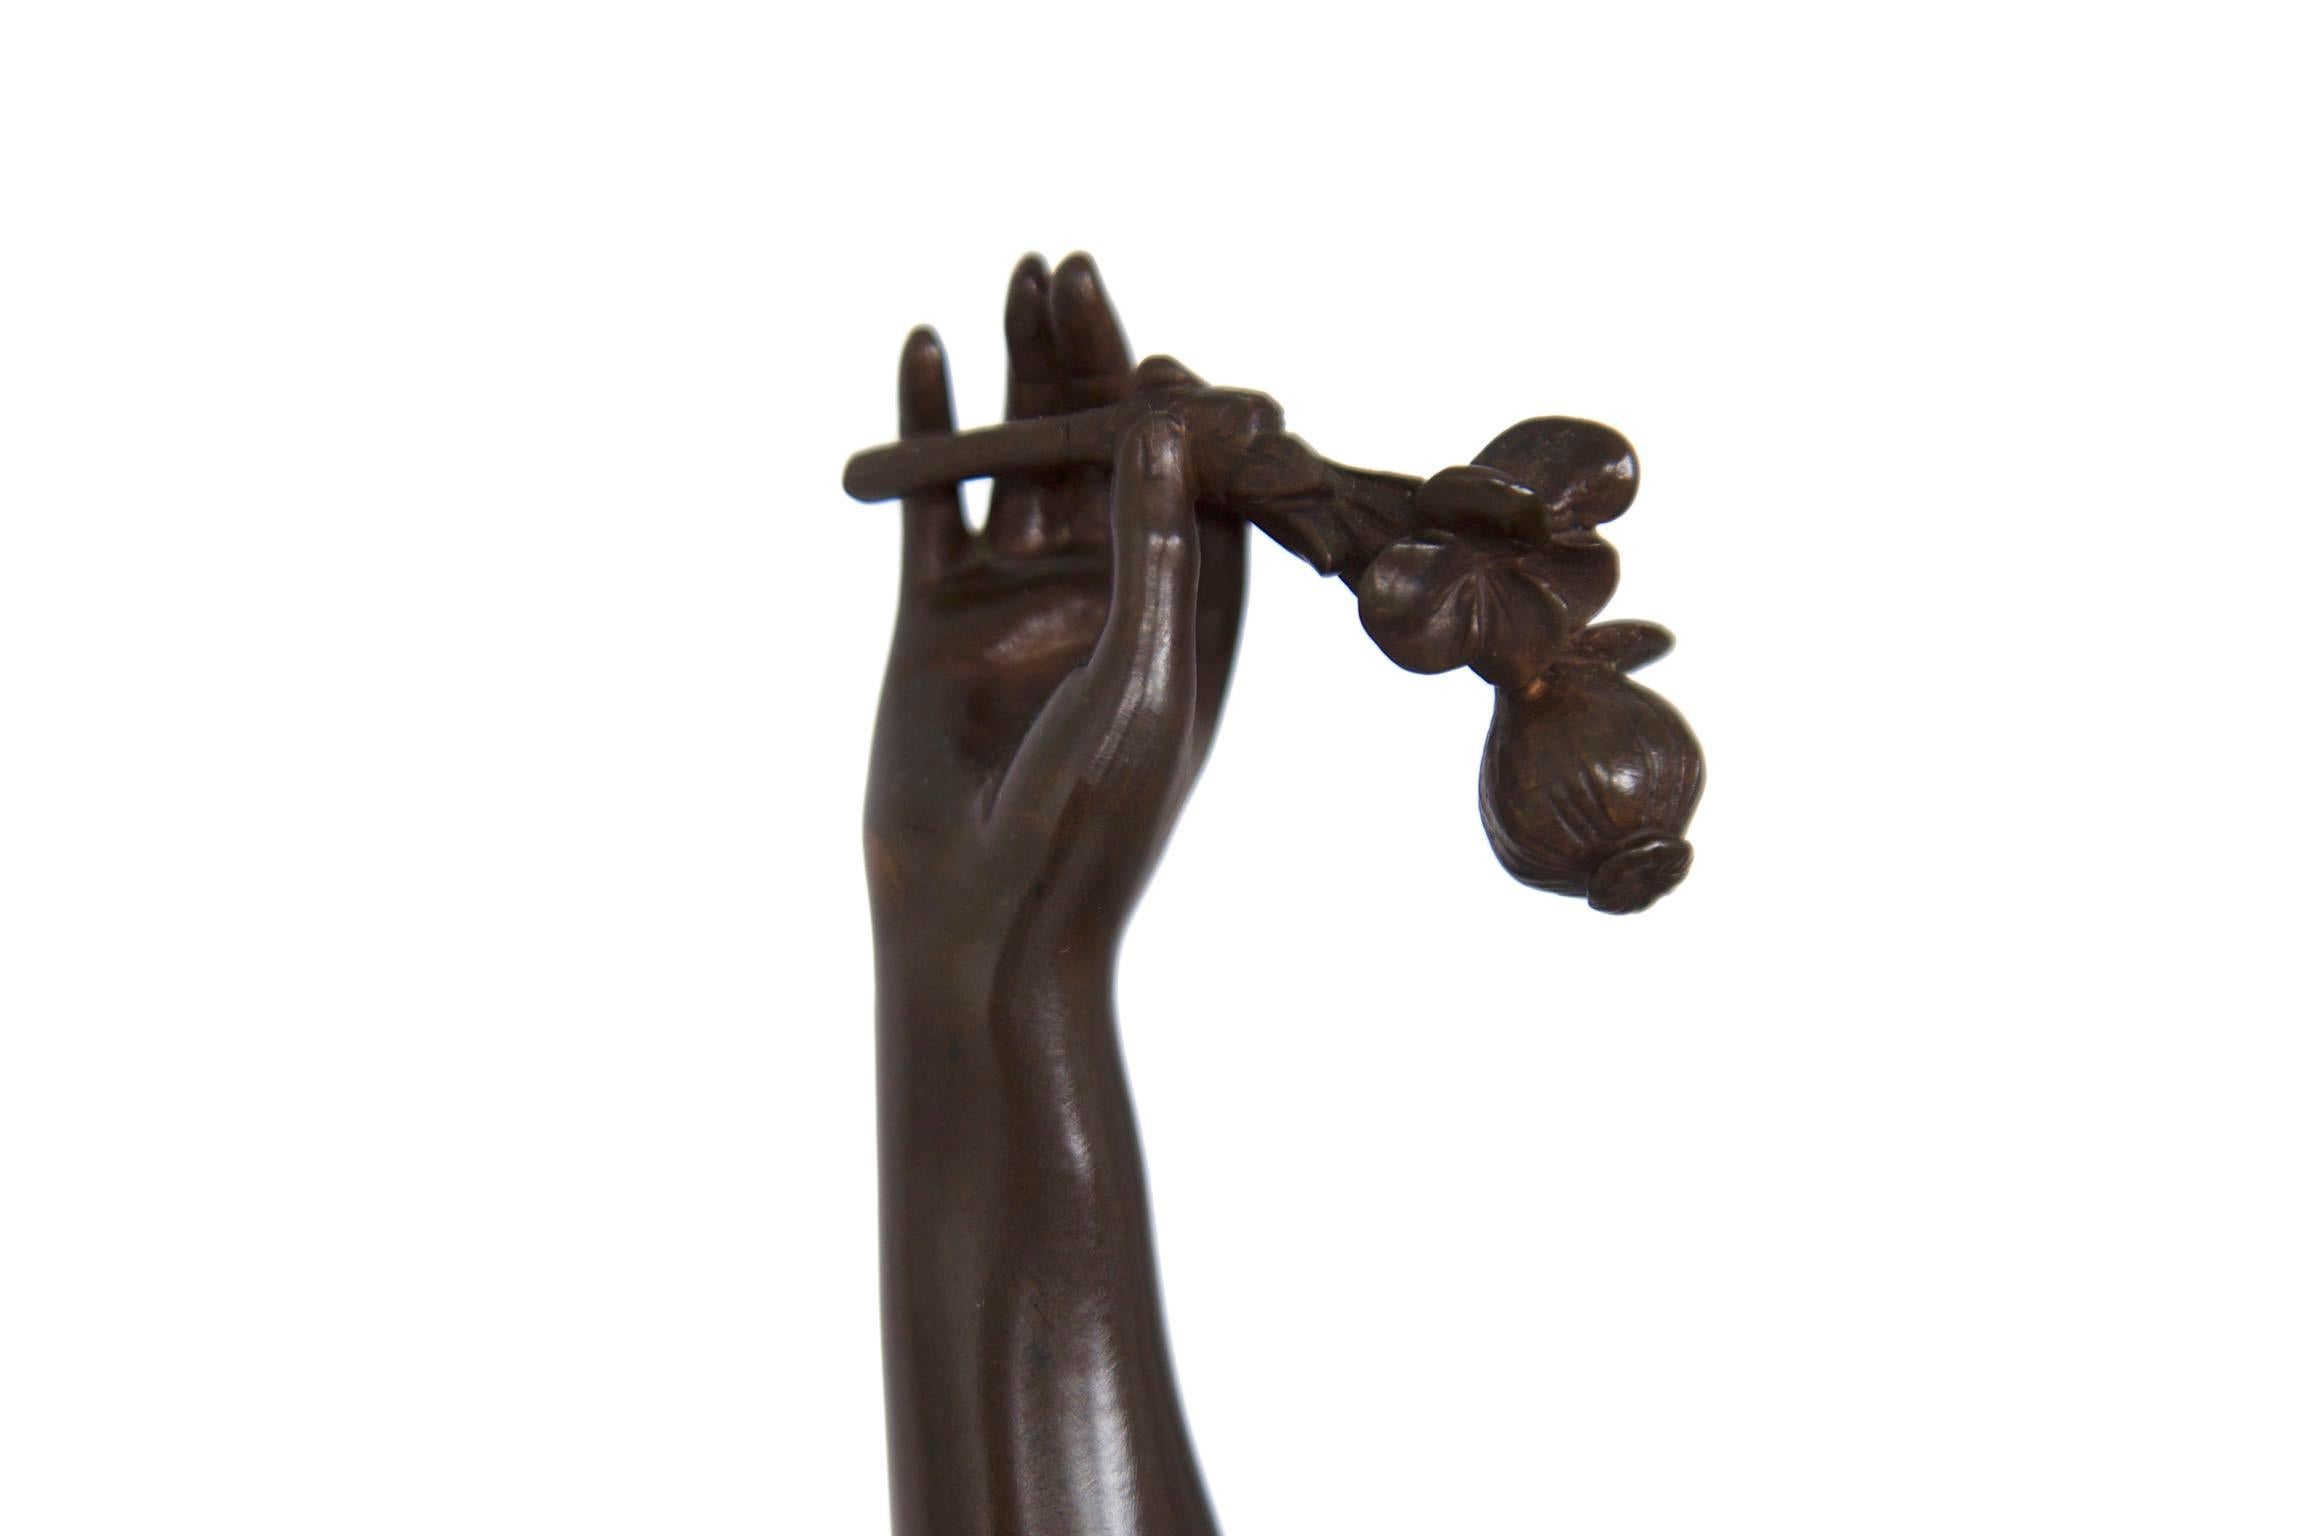 20th Century Antique Art Nouveau French Bronze Sculpture of “The Dream” by Lucien Pallez